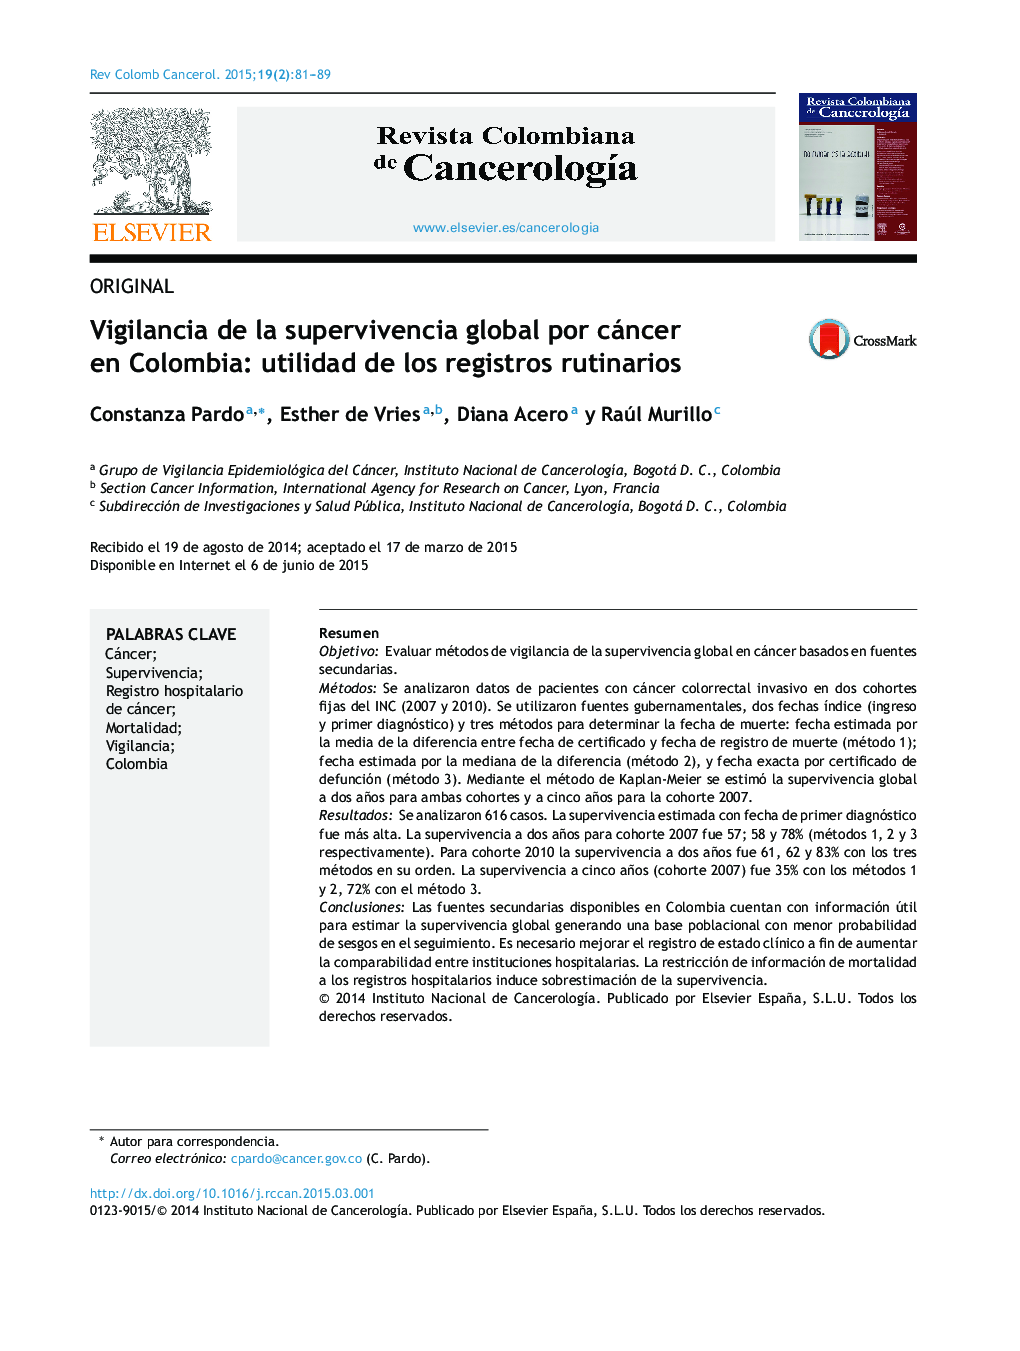 Vigilancia de la supervivencia global por cáncer en Colombia: utilidad de los registros rutinarios